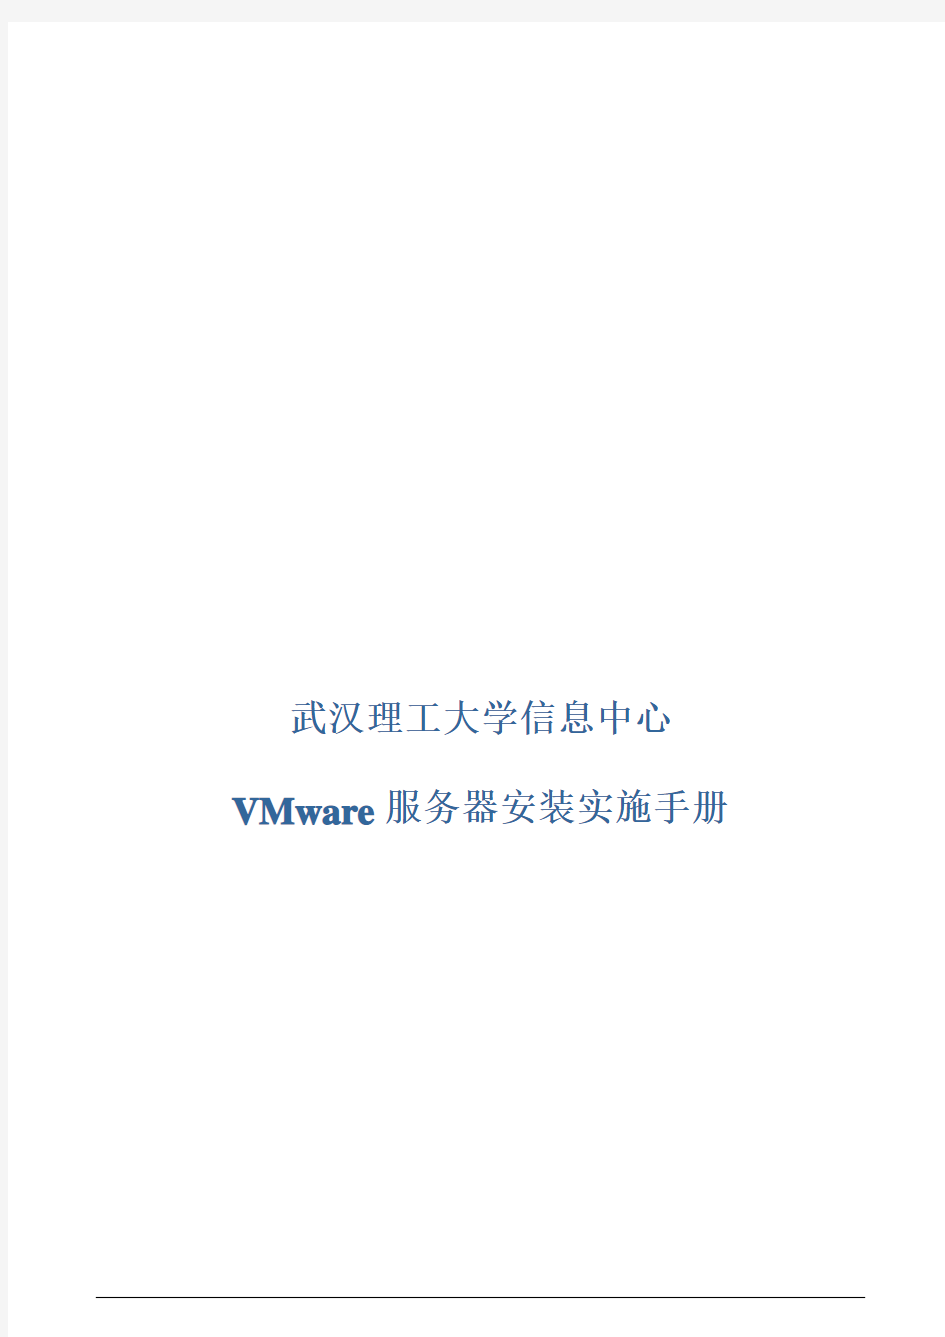 VMware服务器安装实施手册